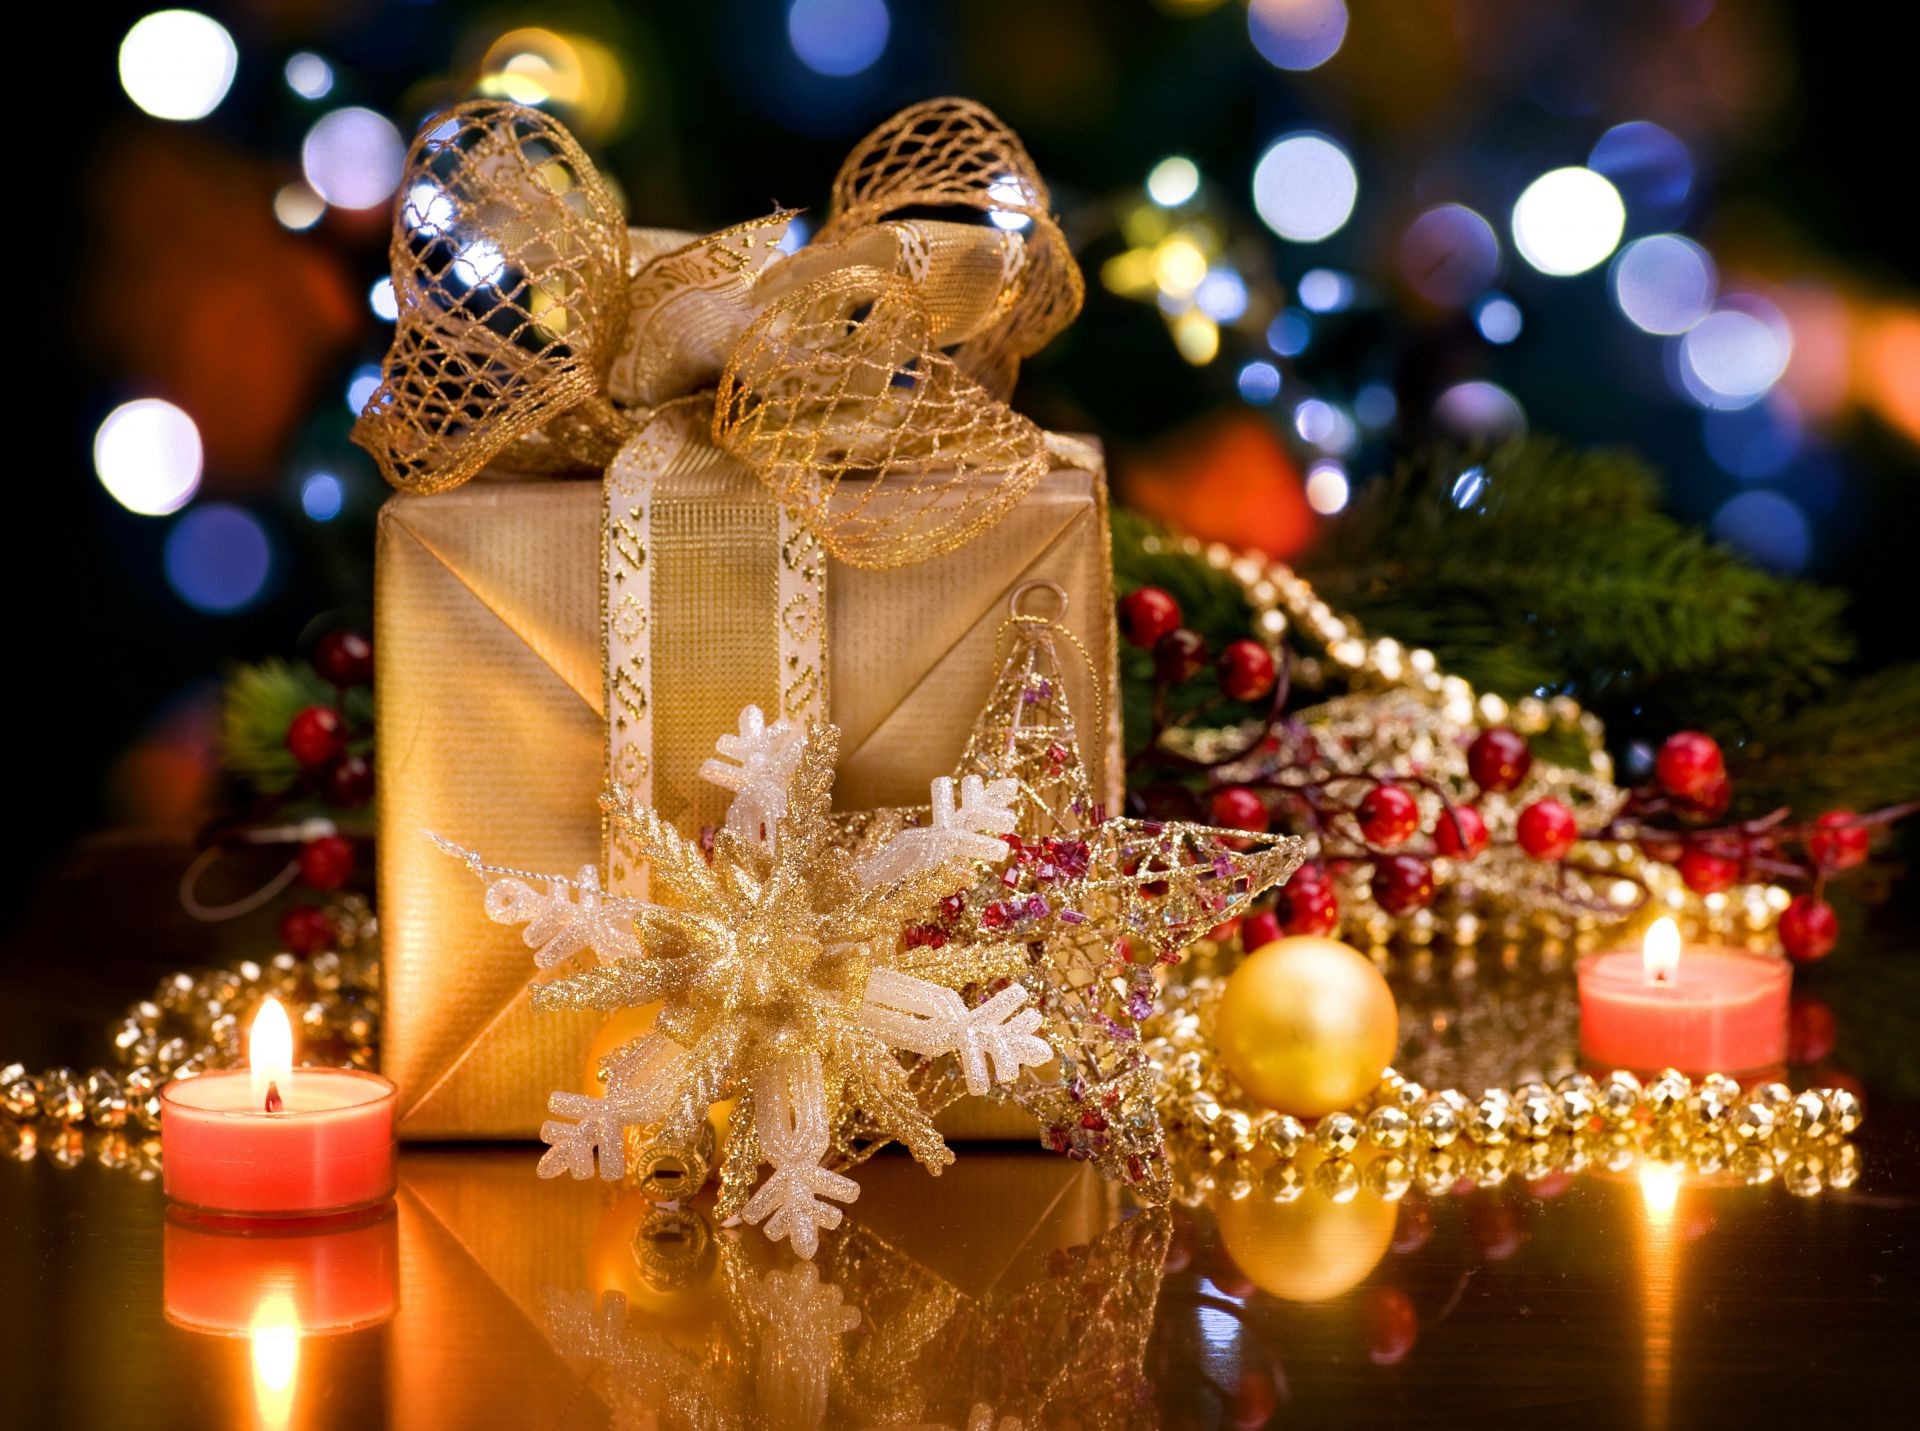 Поиск обоев новогодняя елка с подаркам в разделе все категории.